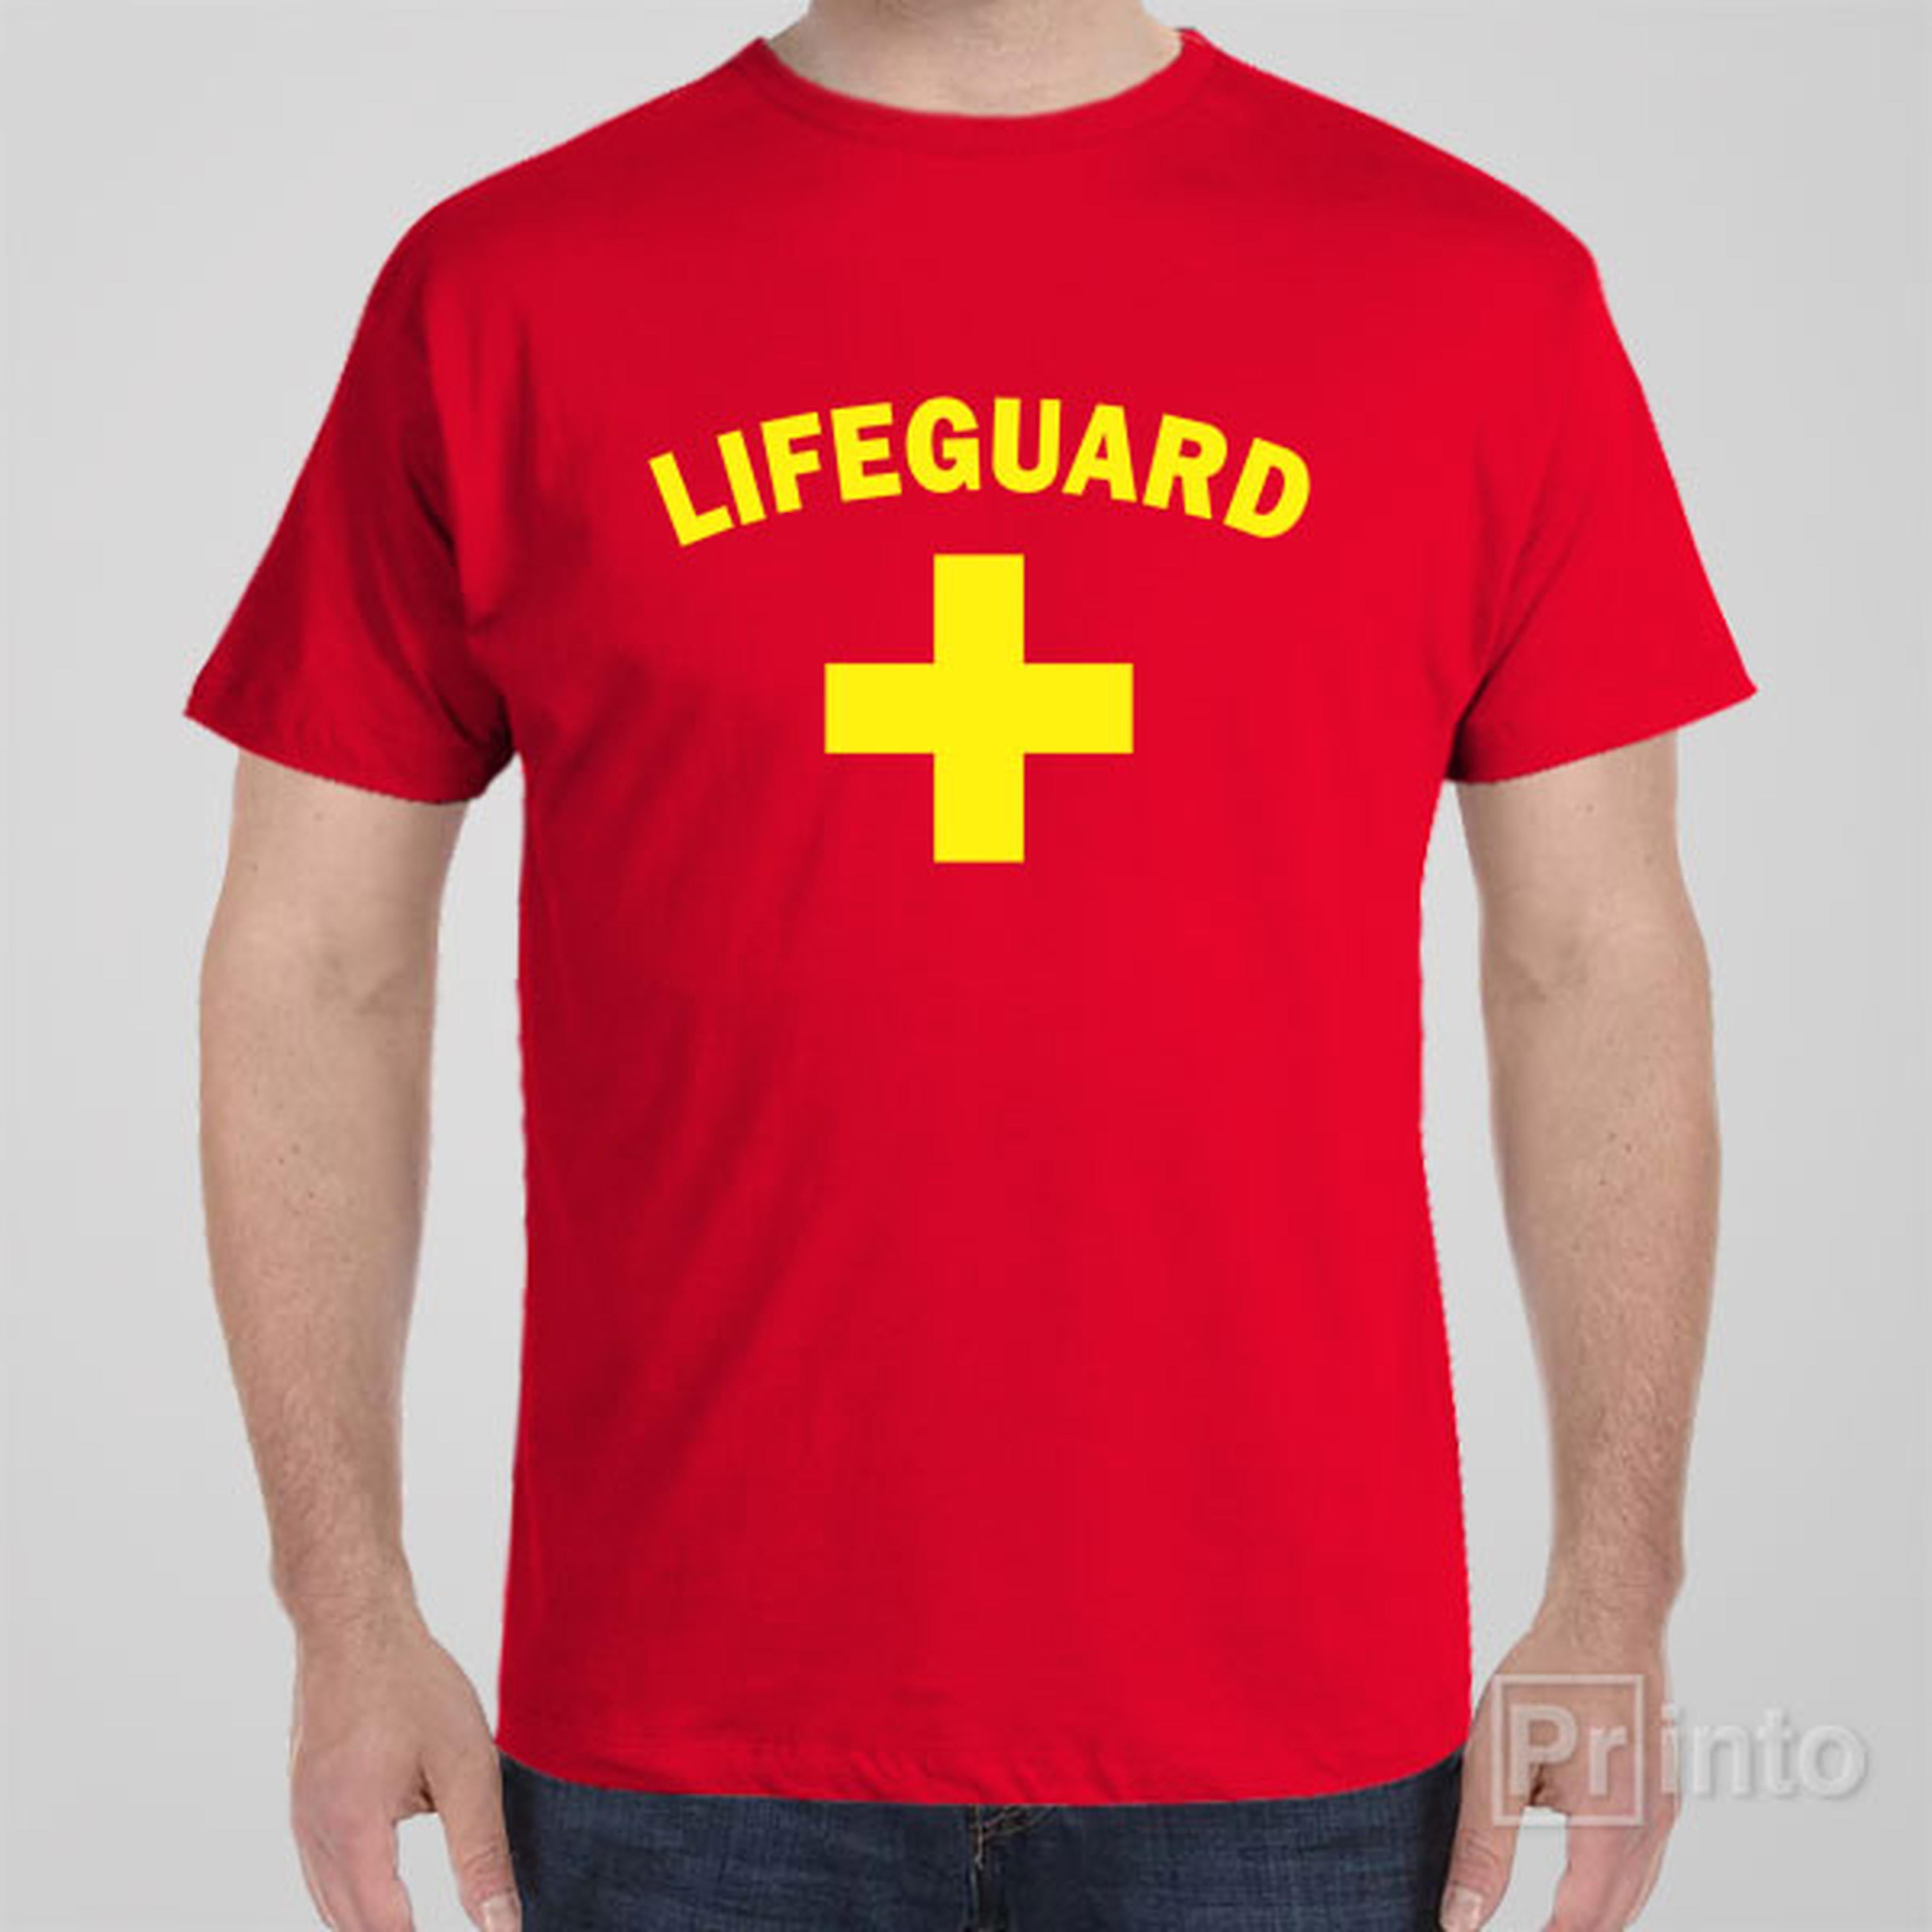 lifeguard-t-shirt